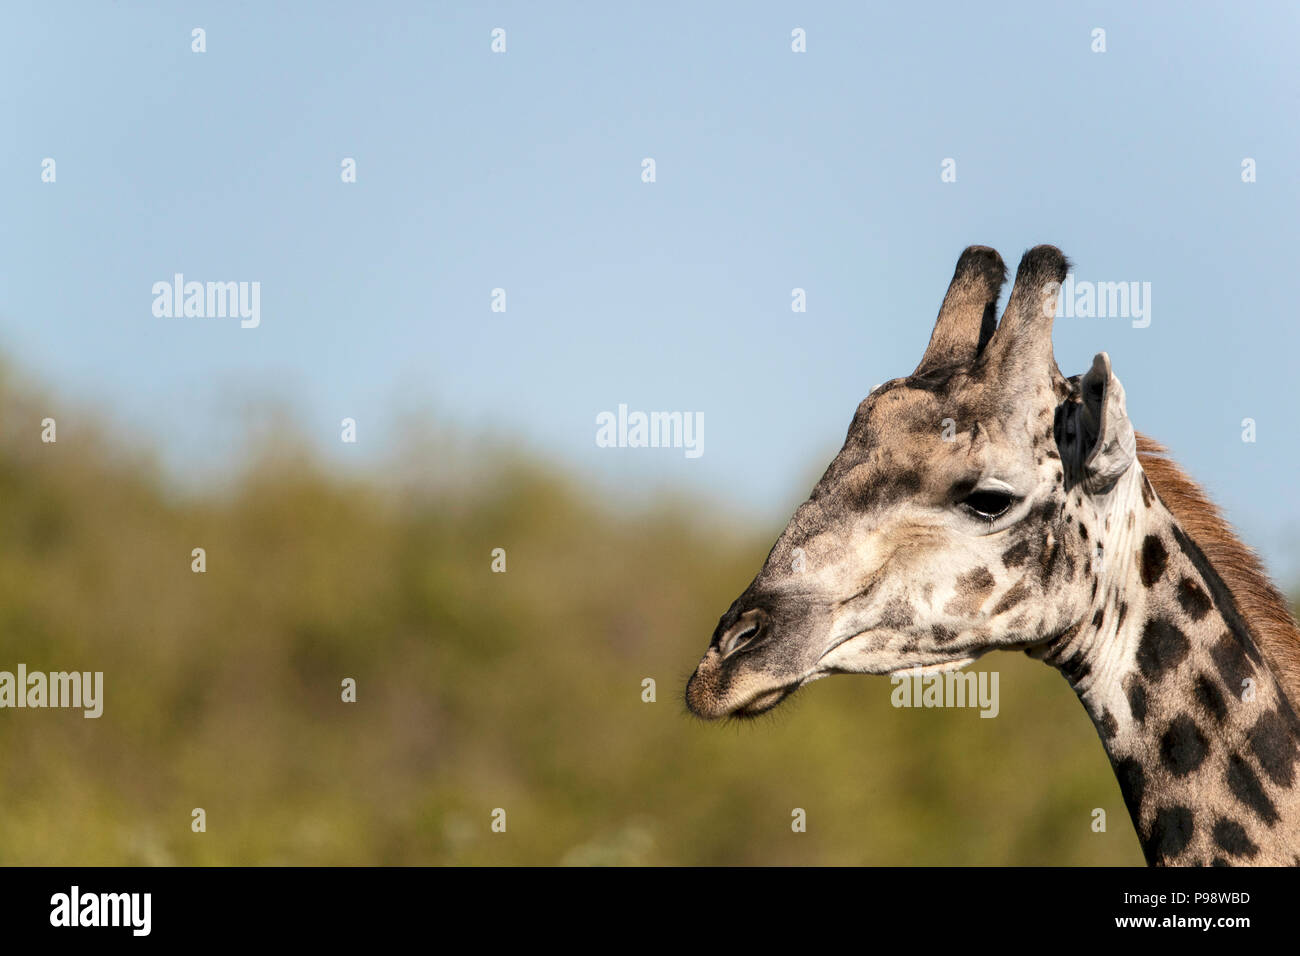 Close-up of giraffe head, Chobe NP, Botswana Stock Photo